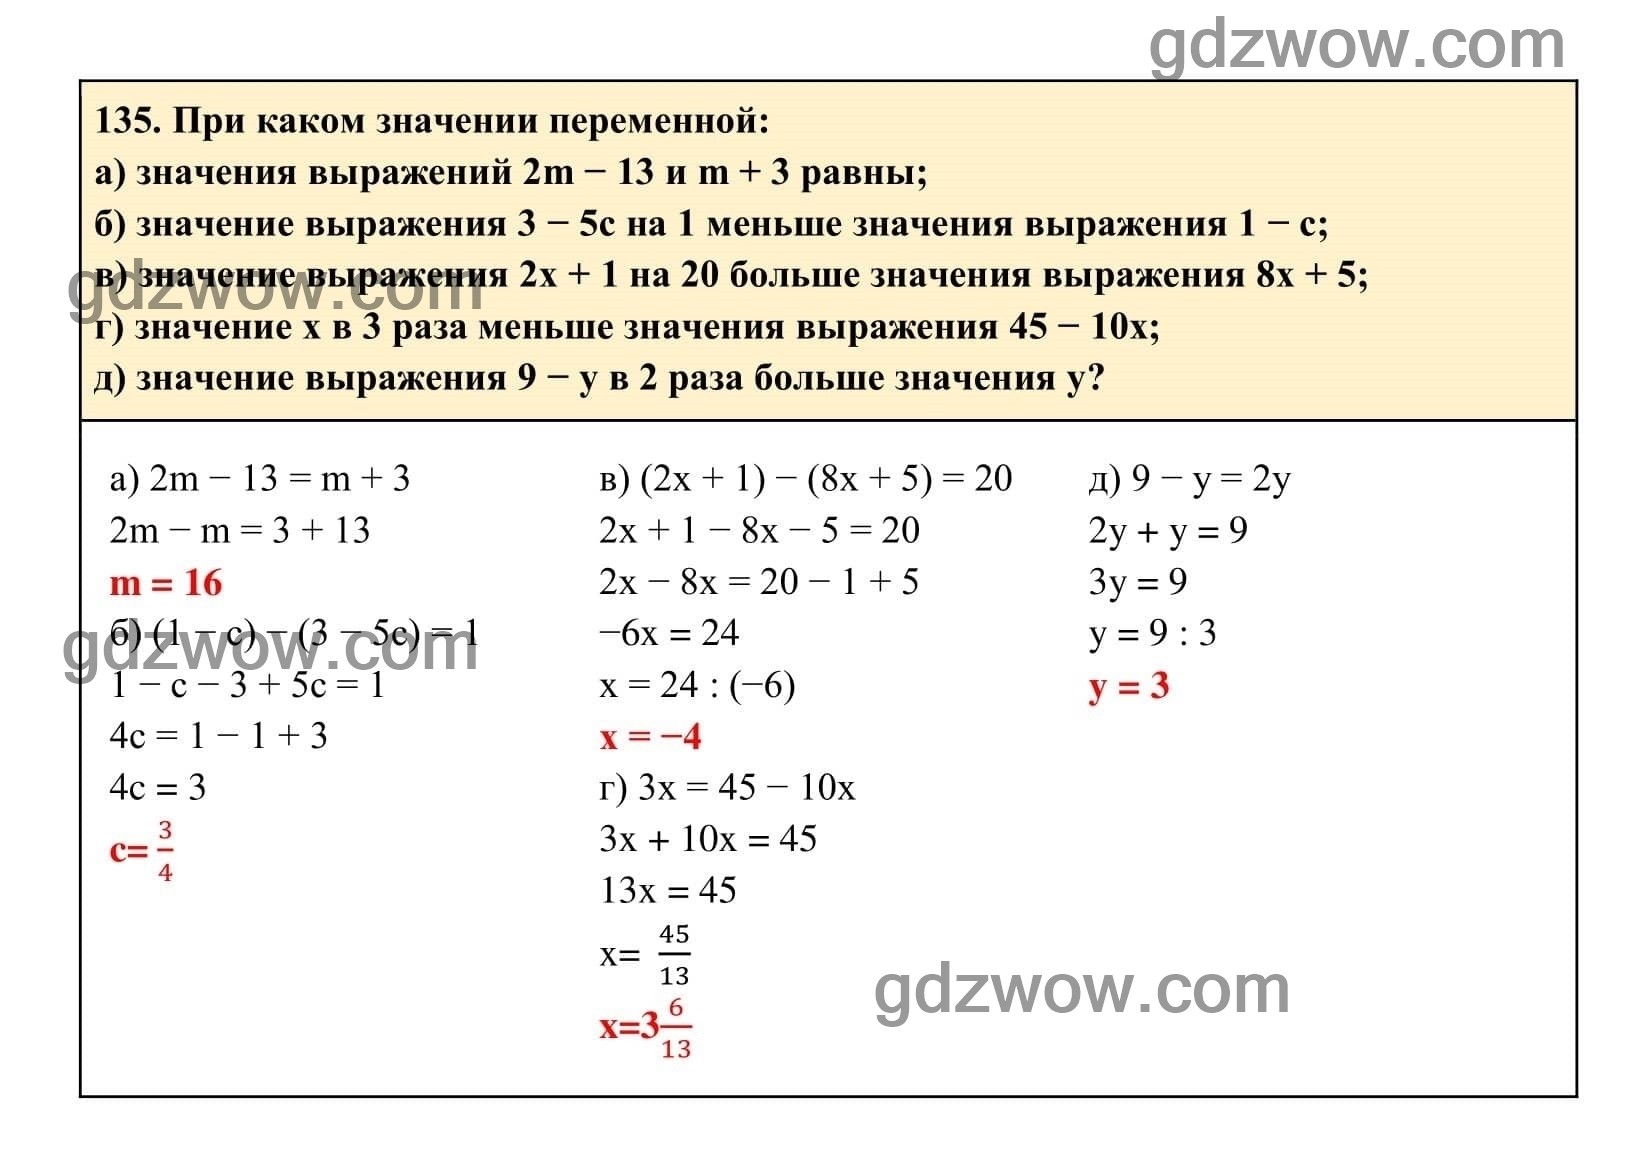 Упражнение 135 - ГДЗ по Алгебре 7 класс Учебник Макарычев (решебник) - GDZwow